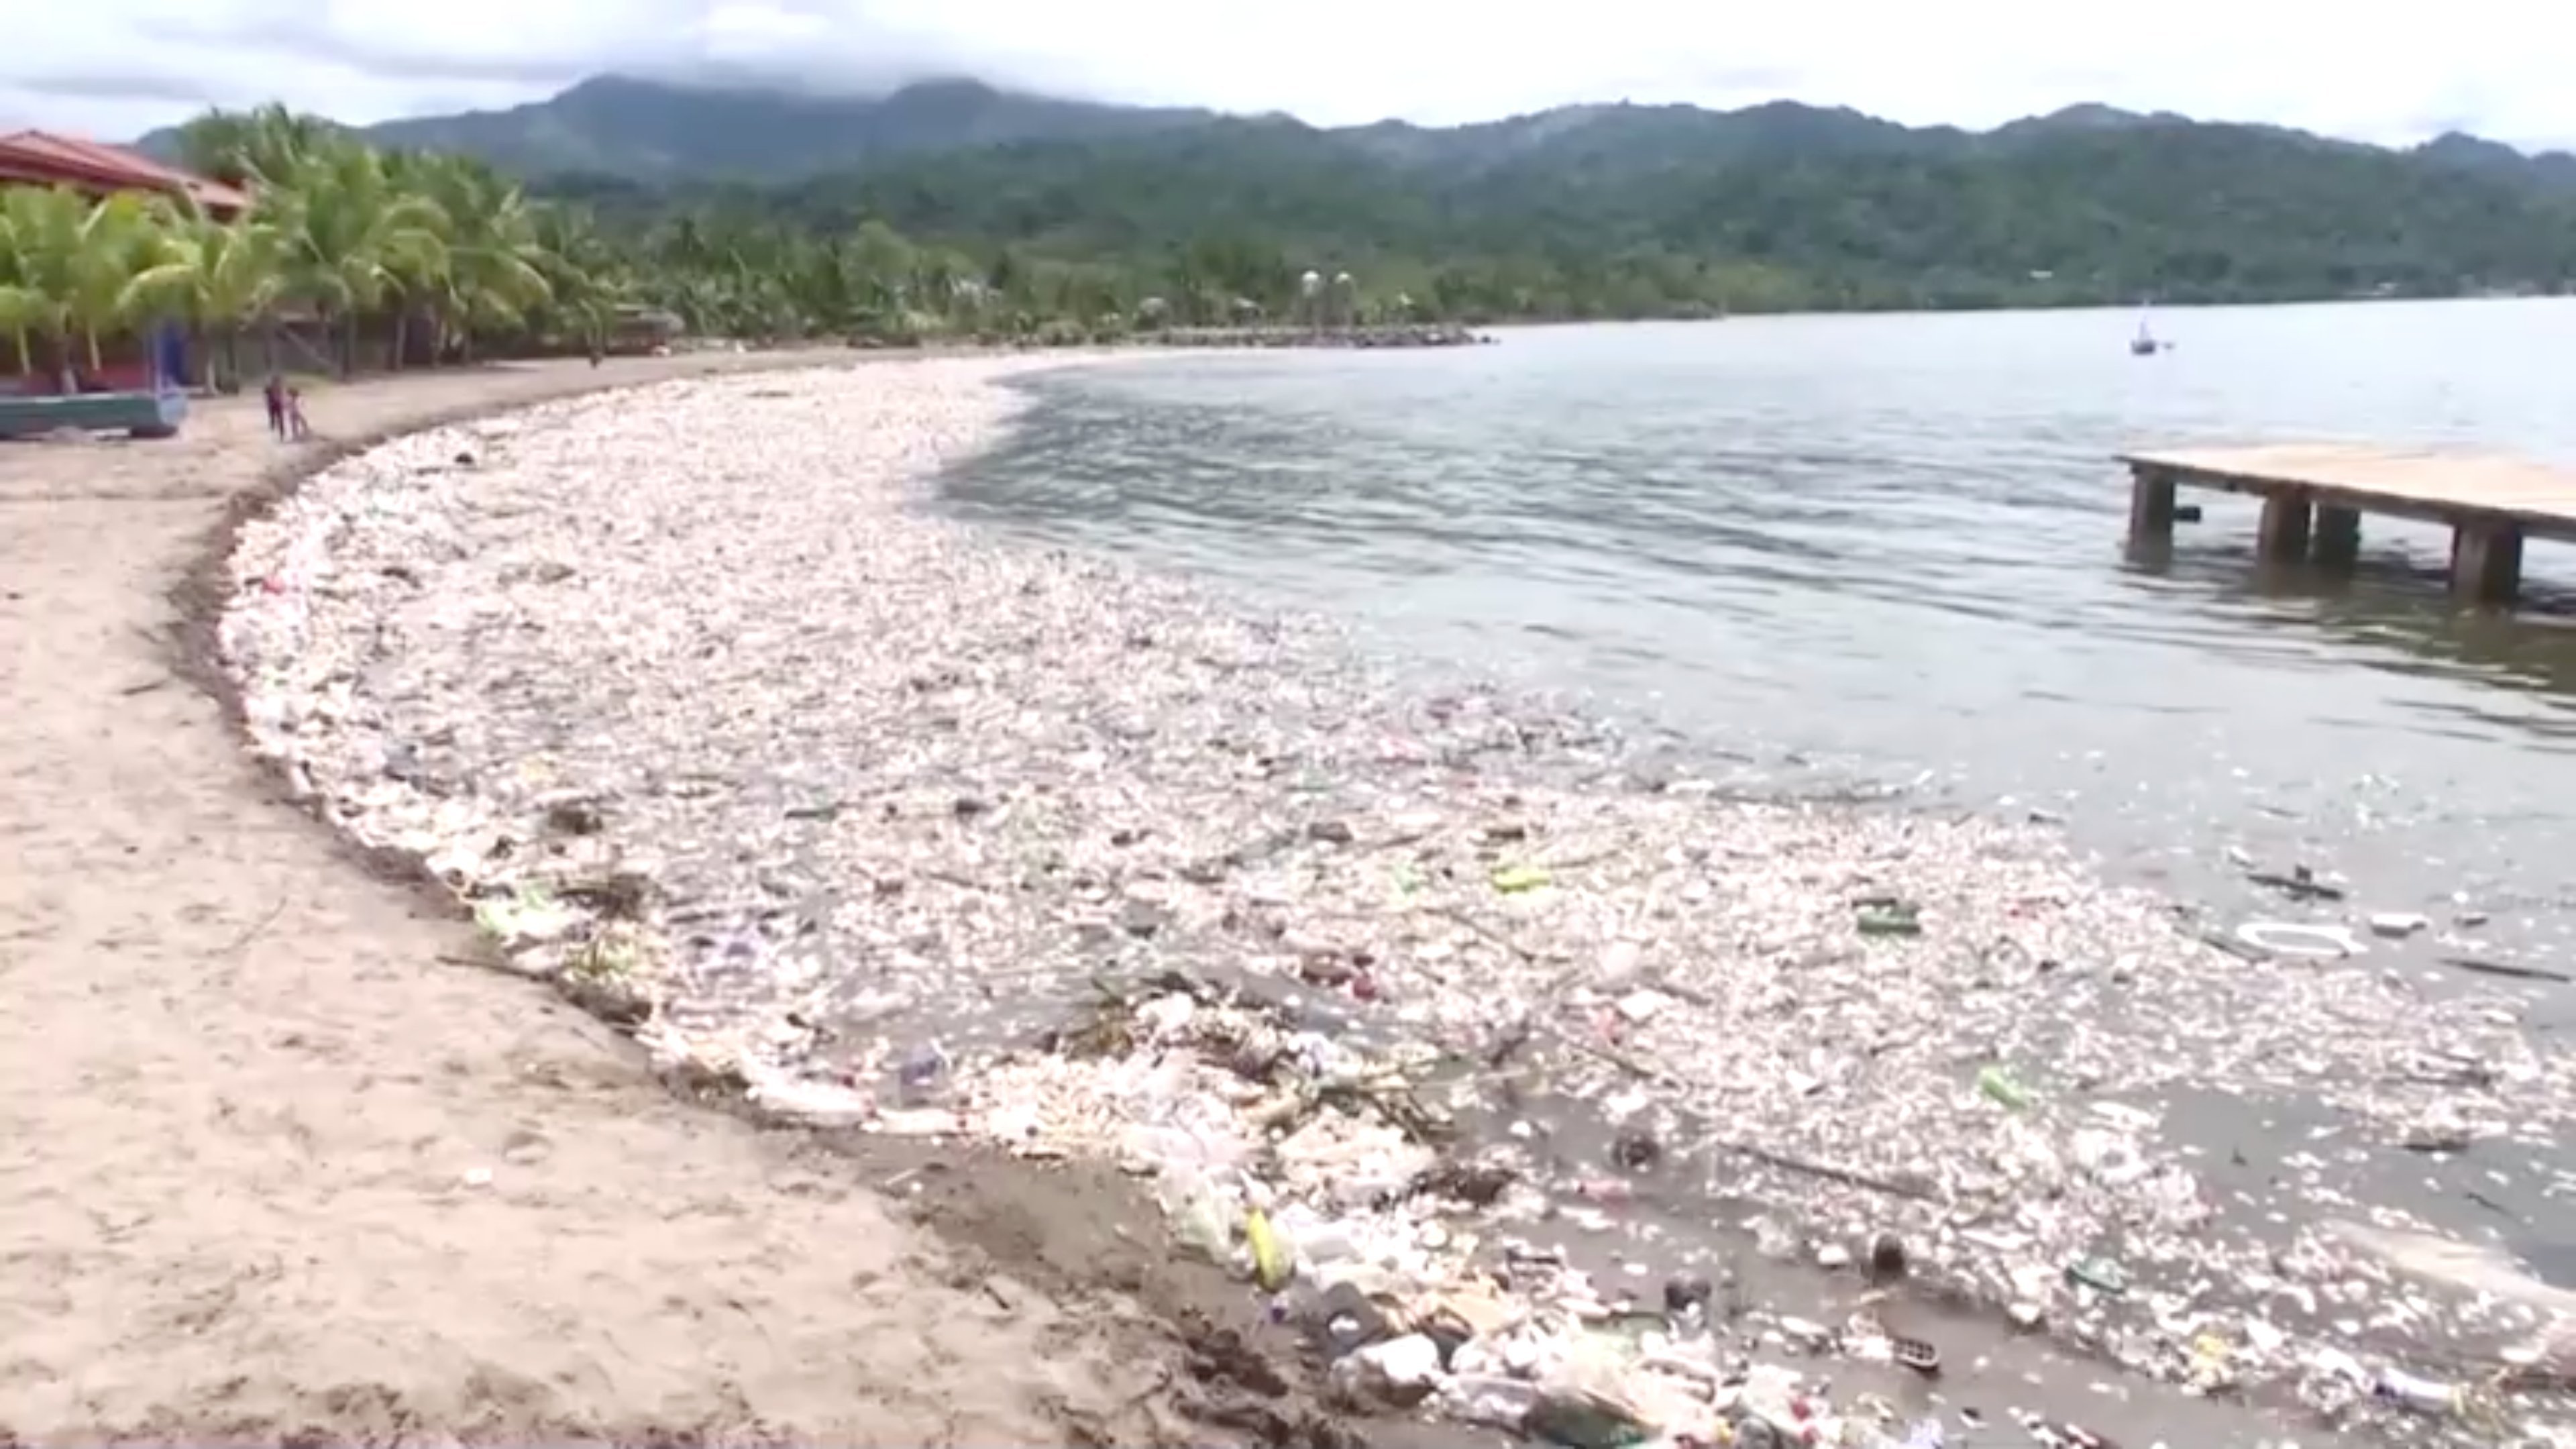 Uma imensa onda de lixo atingiu o litoral de Omoa, no norte de Honduras, criando cenas de terror, com límpidas praias tropicais arruinadas por pilhas de sujeira.